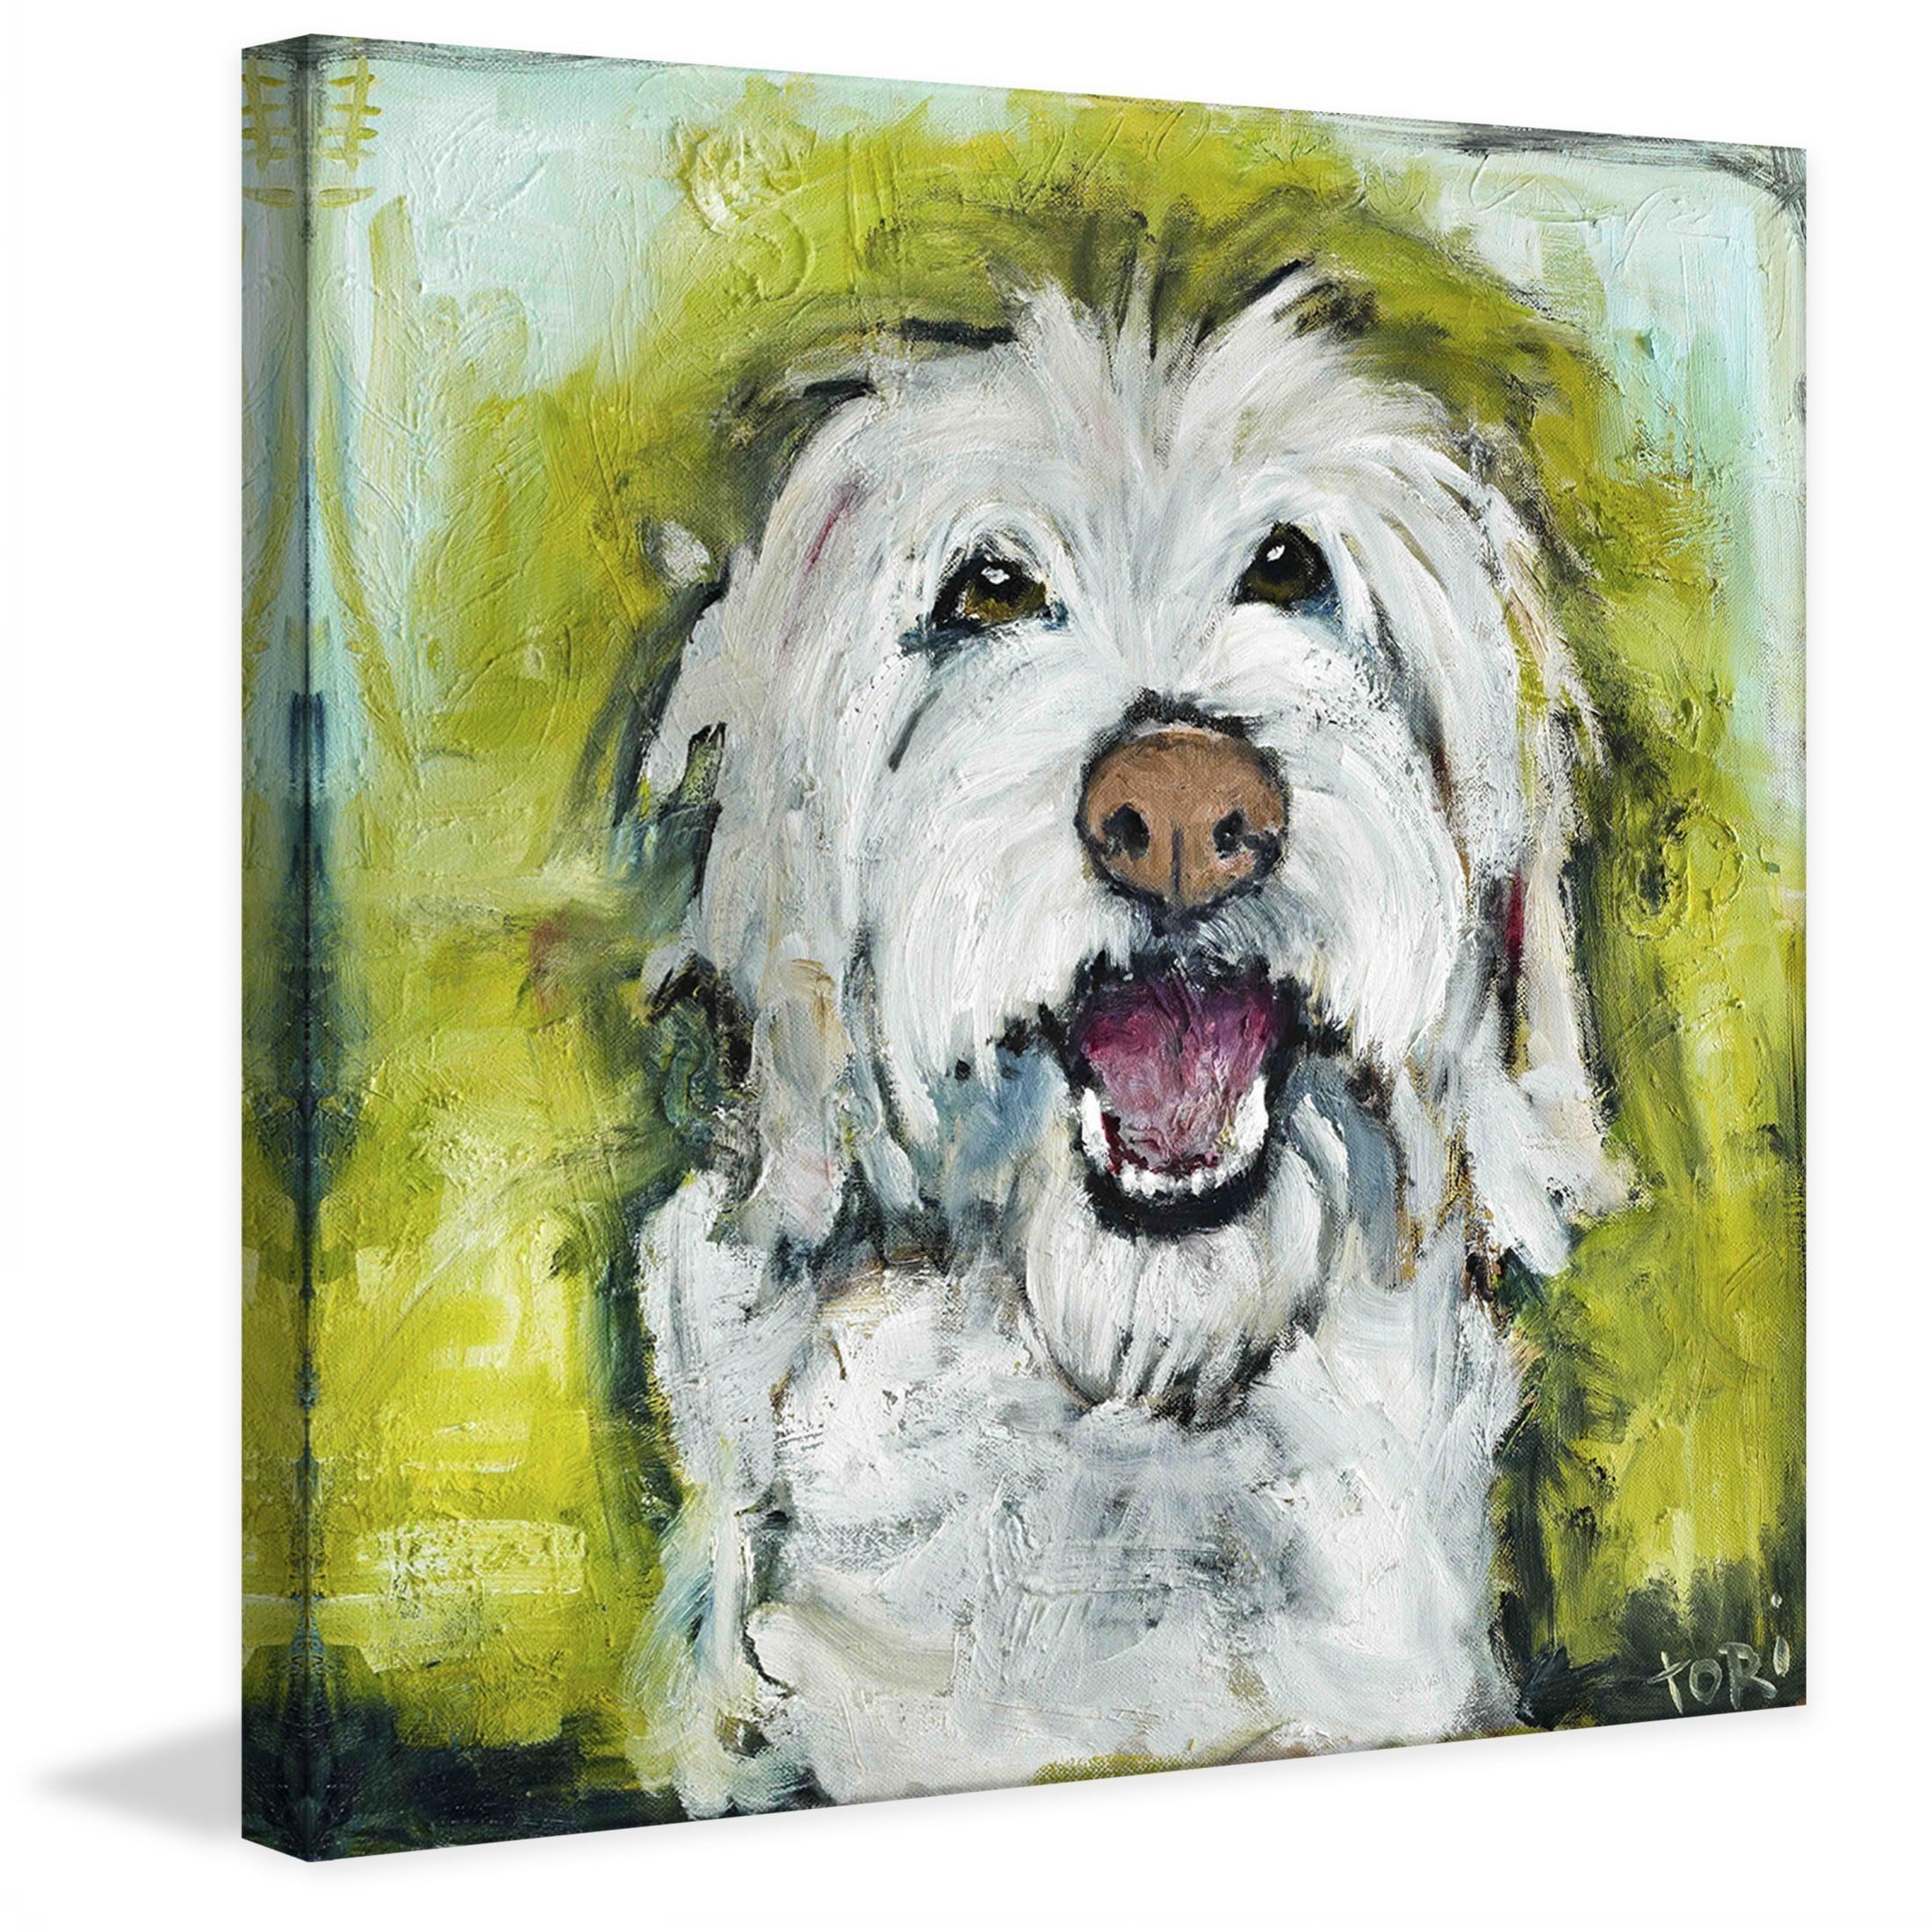 Handmade Smiley Dog Painting Print on 